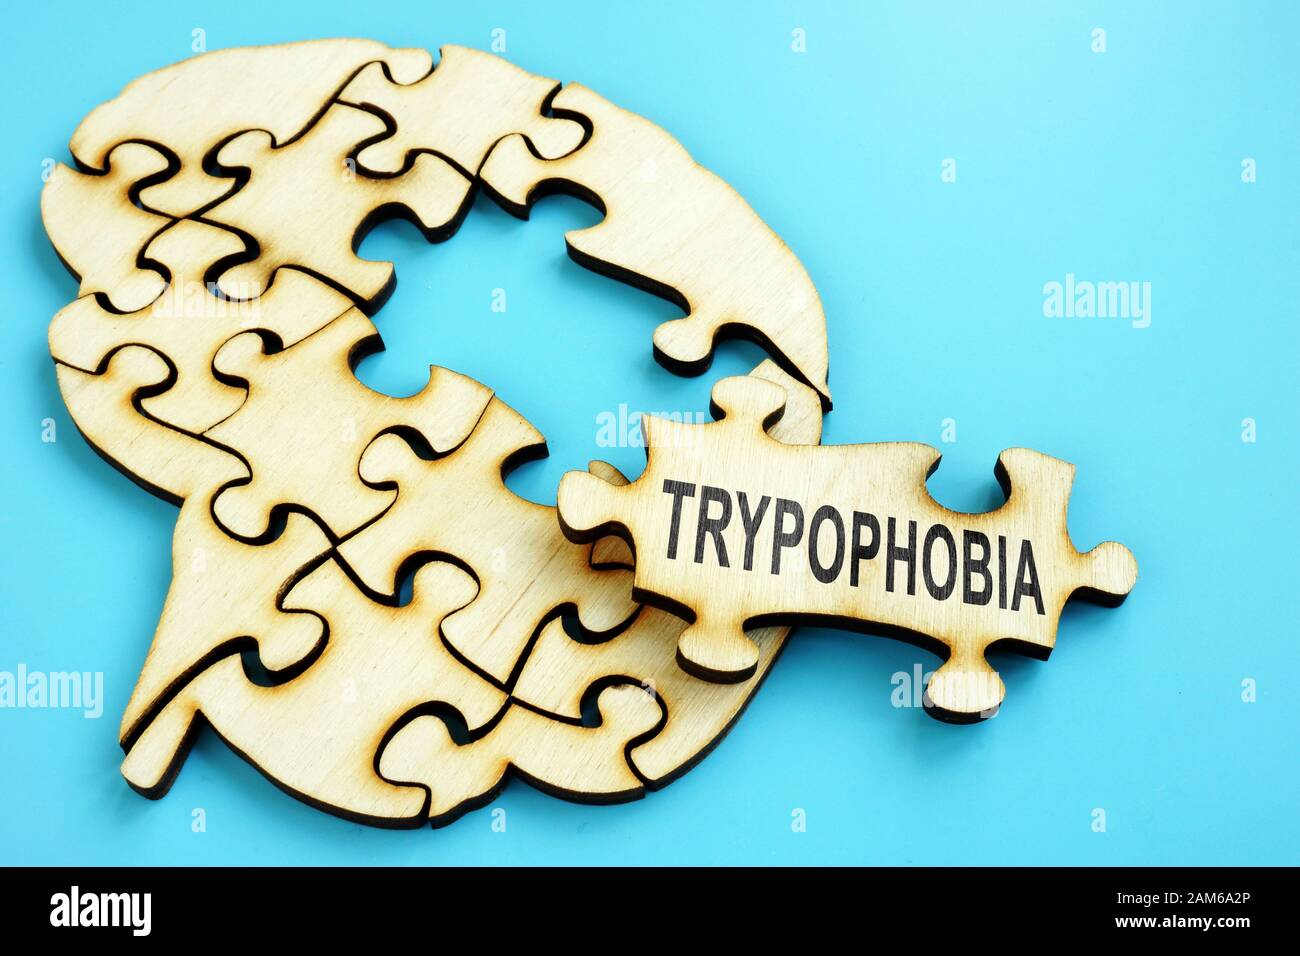 Wort Trypophobia auf dem holzpuzzle mit Gehirn Form. Stockfoto